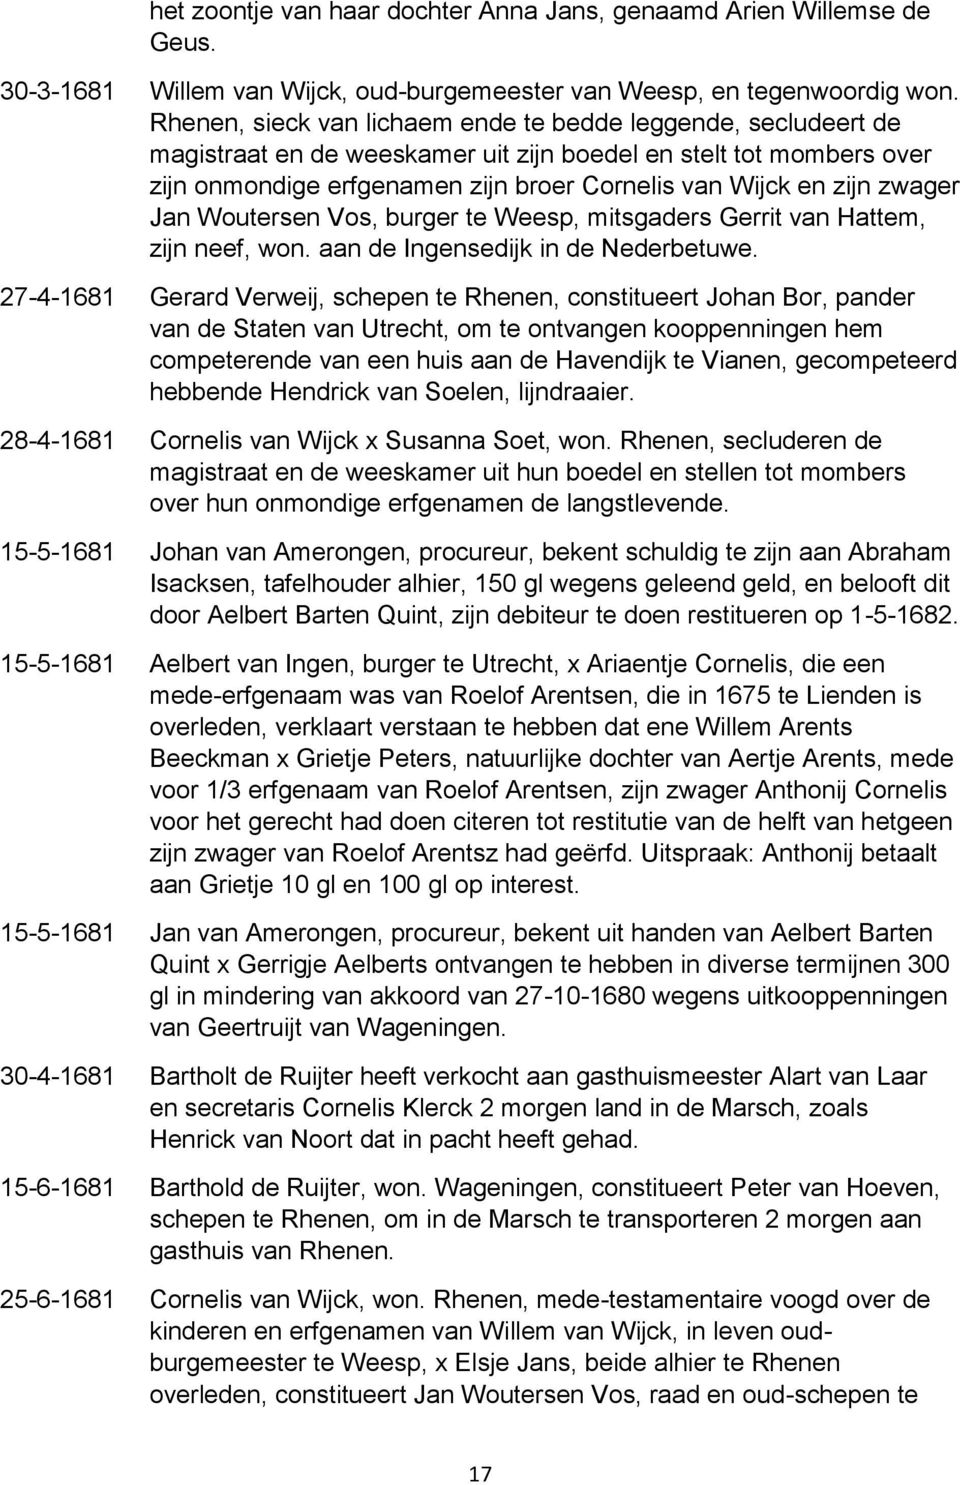 zwager Jan Woutersen Vos, burger te Weesp, mitsgaders Gerrit van Hattem, zijn neef, won. aan de Ingensedijk in de Nederbetuwe.